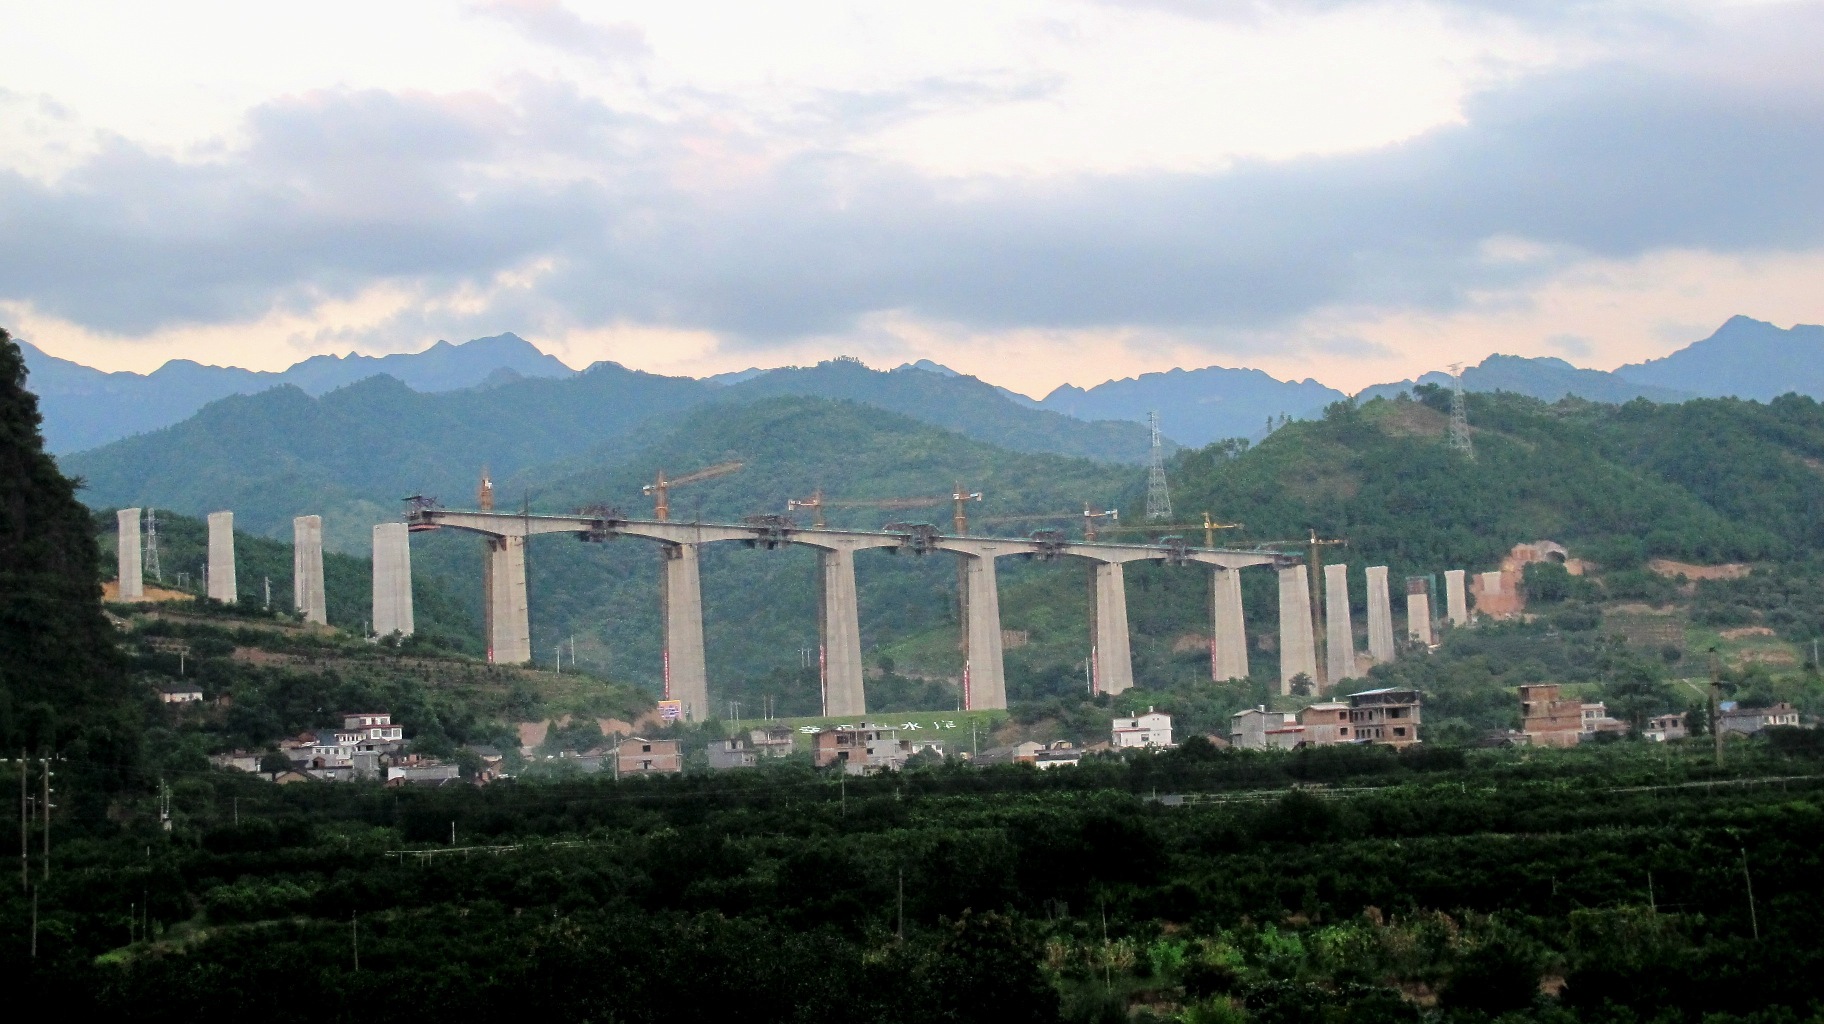 The Guiyang–Guangzhou high-speed railway under construction in Yangshuo, southern China (Billyshanenunn/CC BY-SA 3.0)